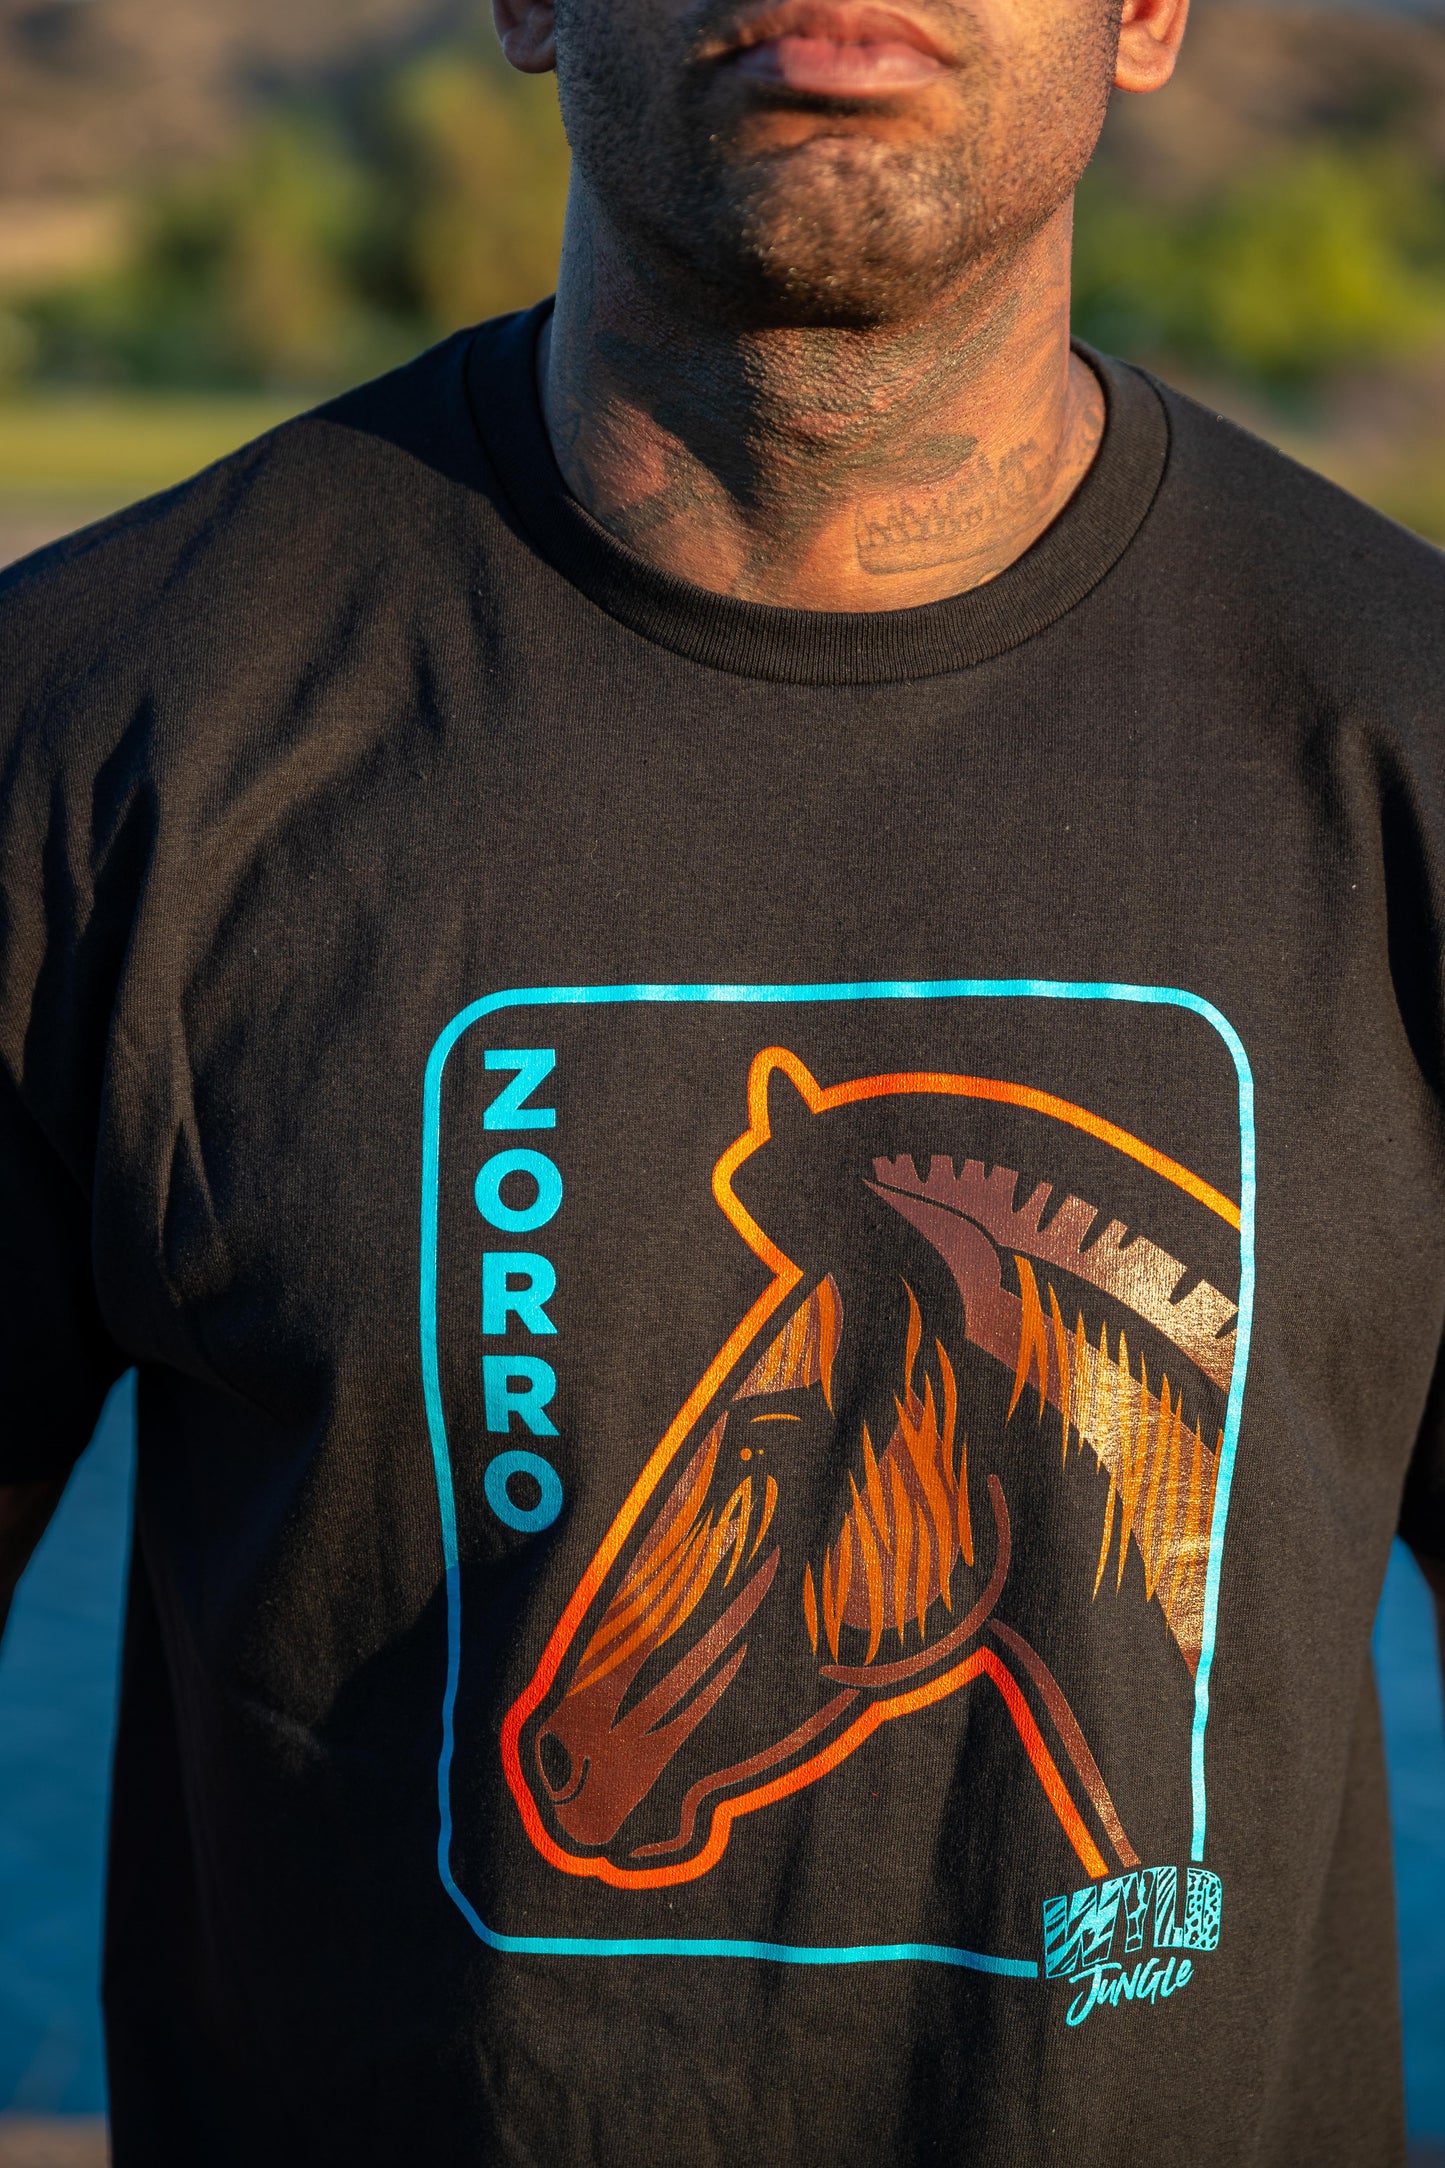 Zorro the Zorse T-shirt